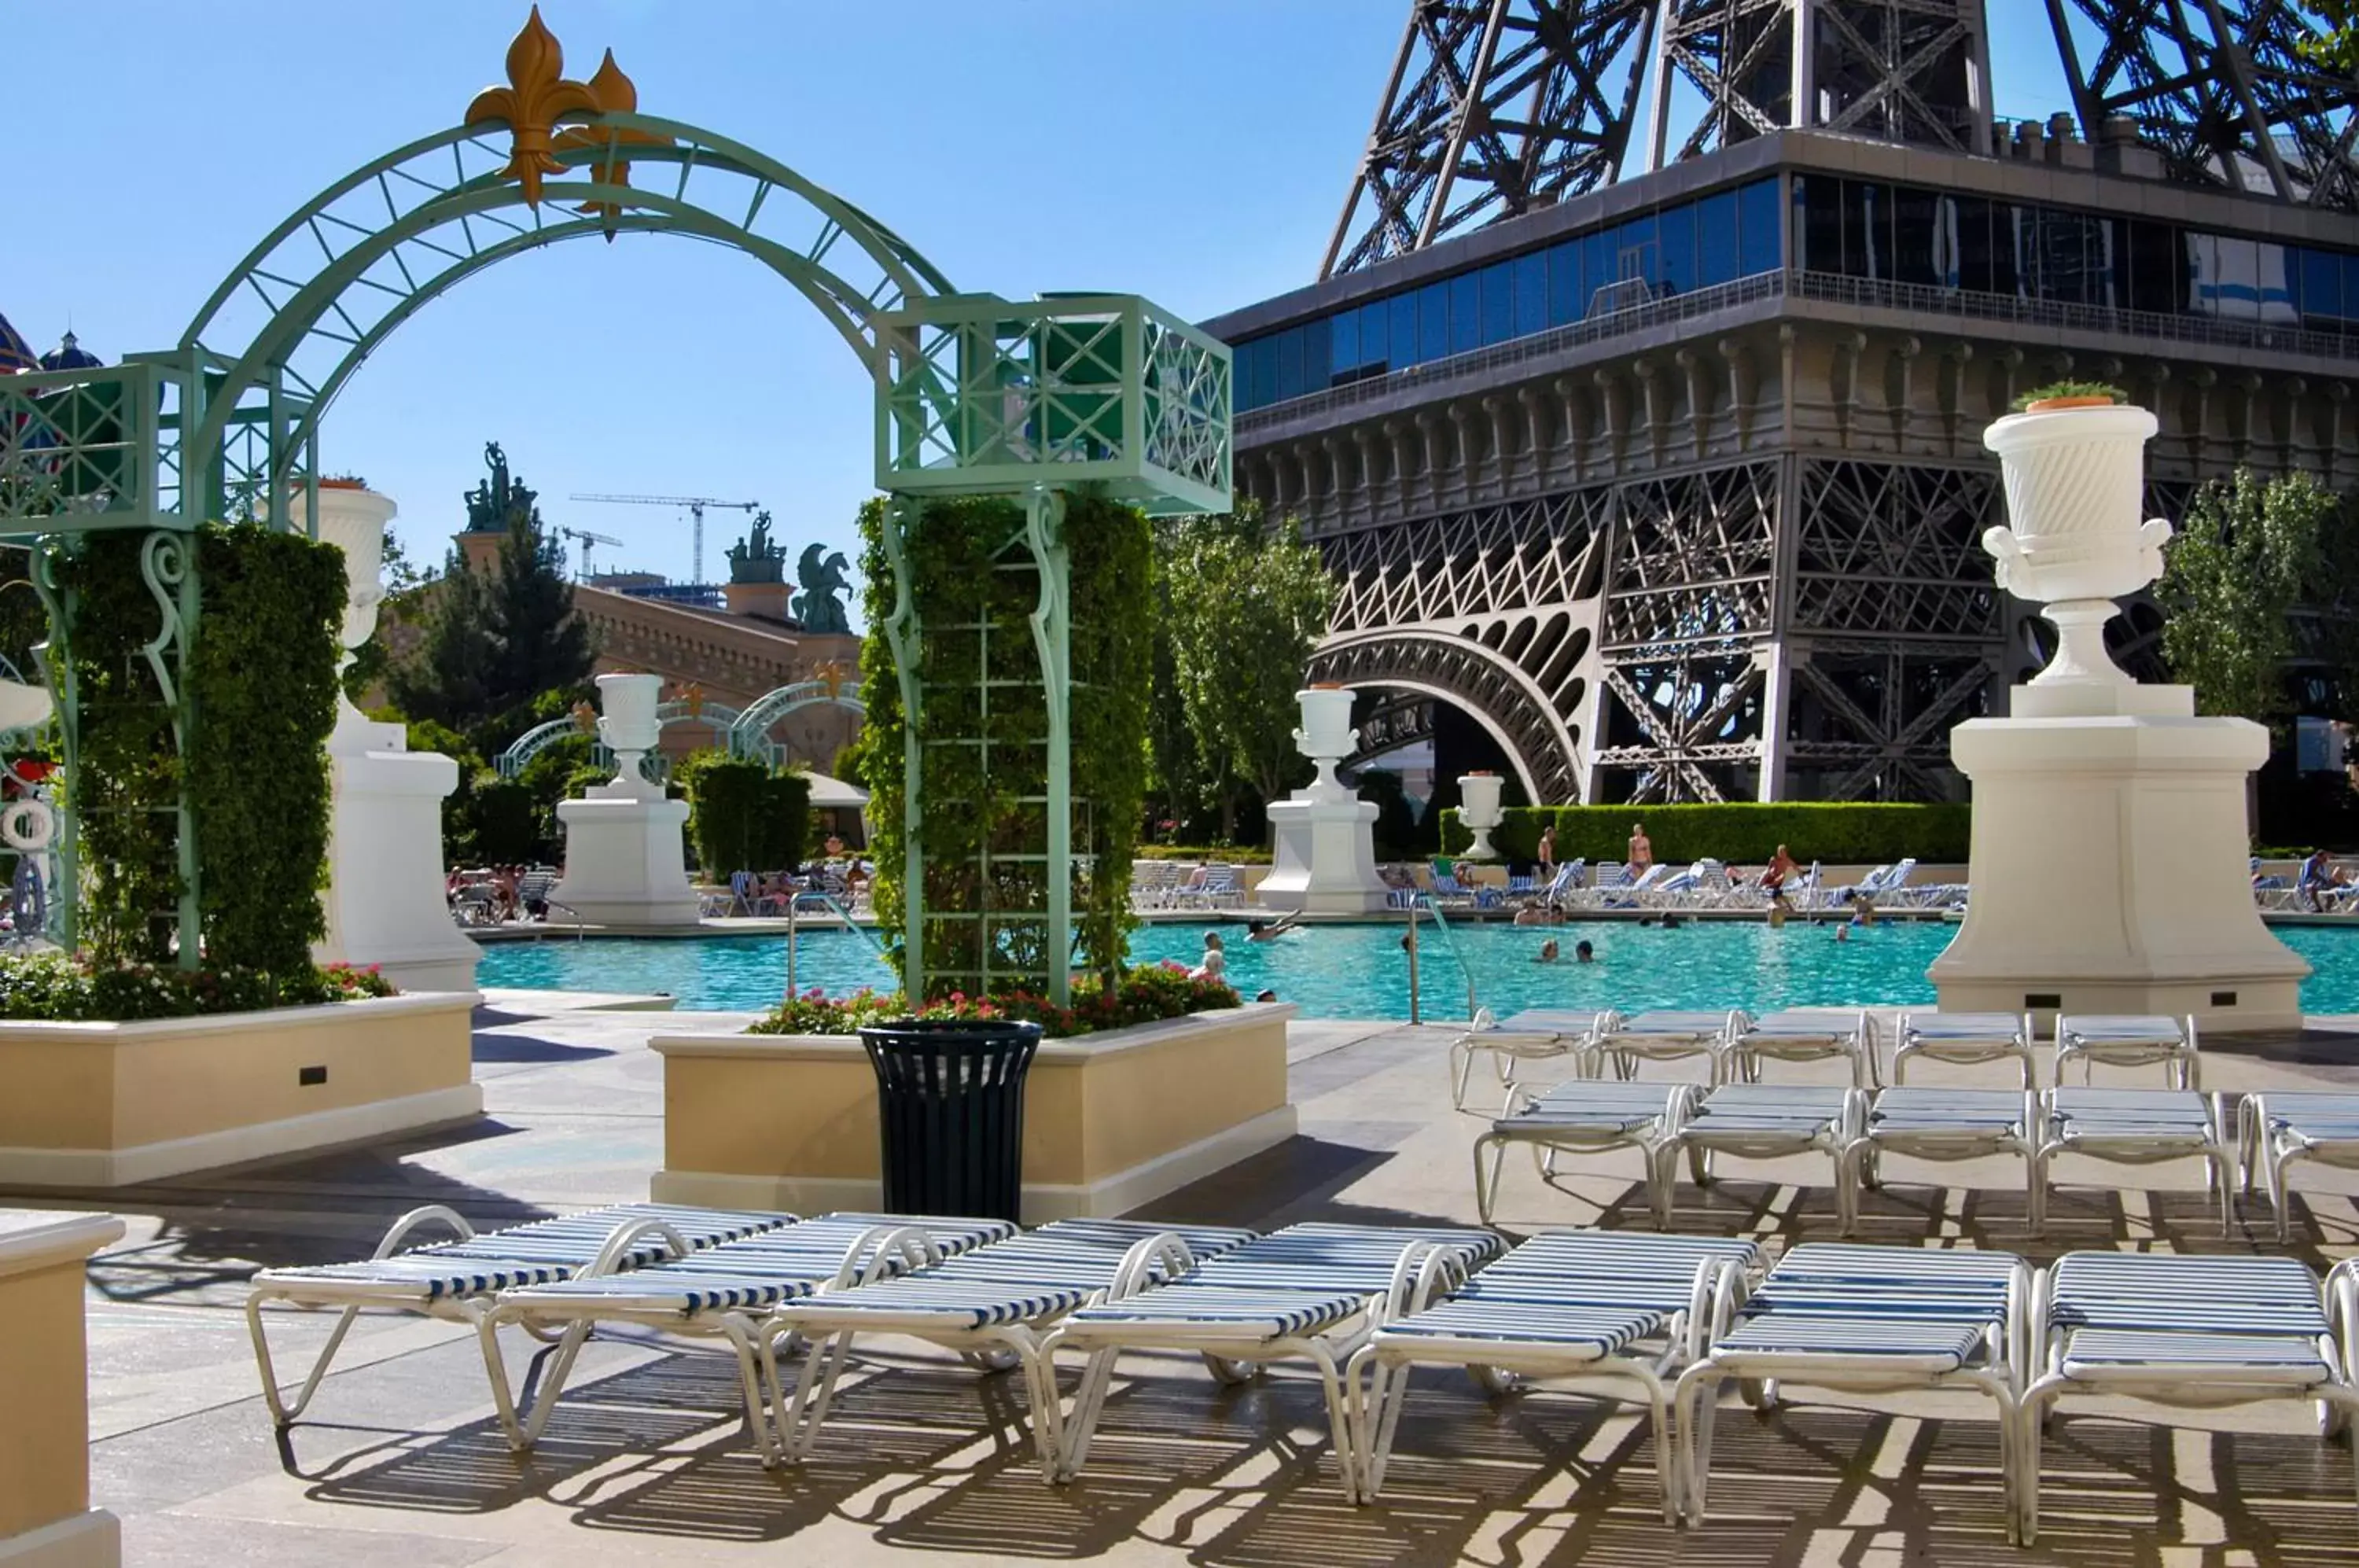 Swimming pool in Paris Las Vegas Hotel & Casino